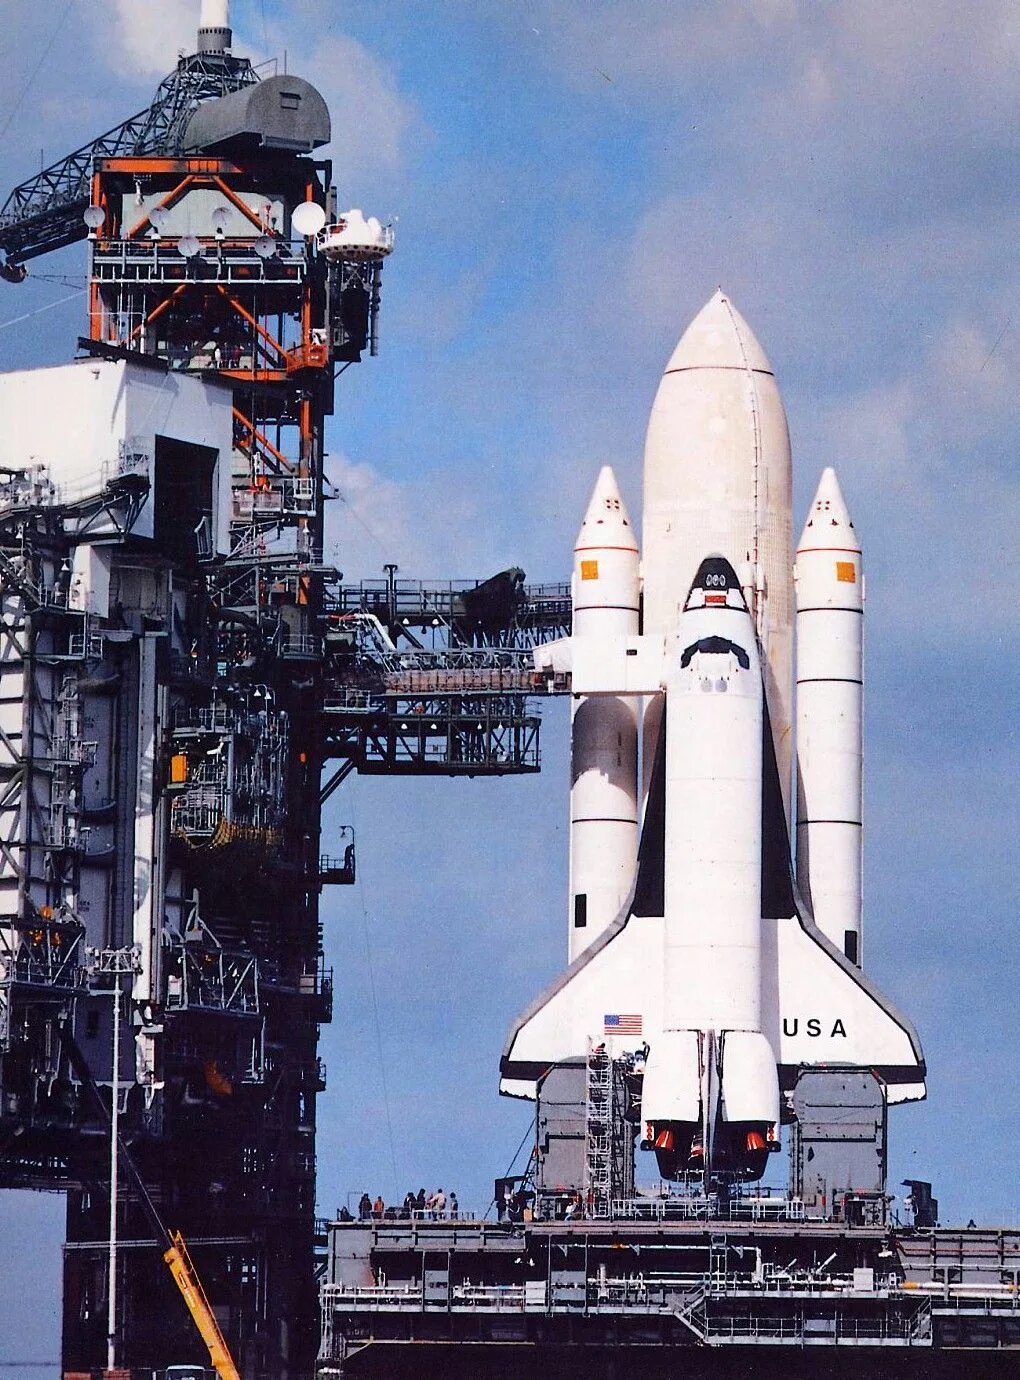 Первый космический челнок. Шаттл Колумбия STS-1 1981. Спейс шаттл космический корабль. Спейс шаттл 1981. Спэйс шаттл «Колумбия» 1981.